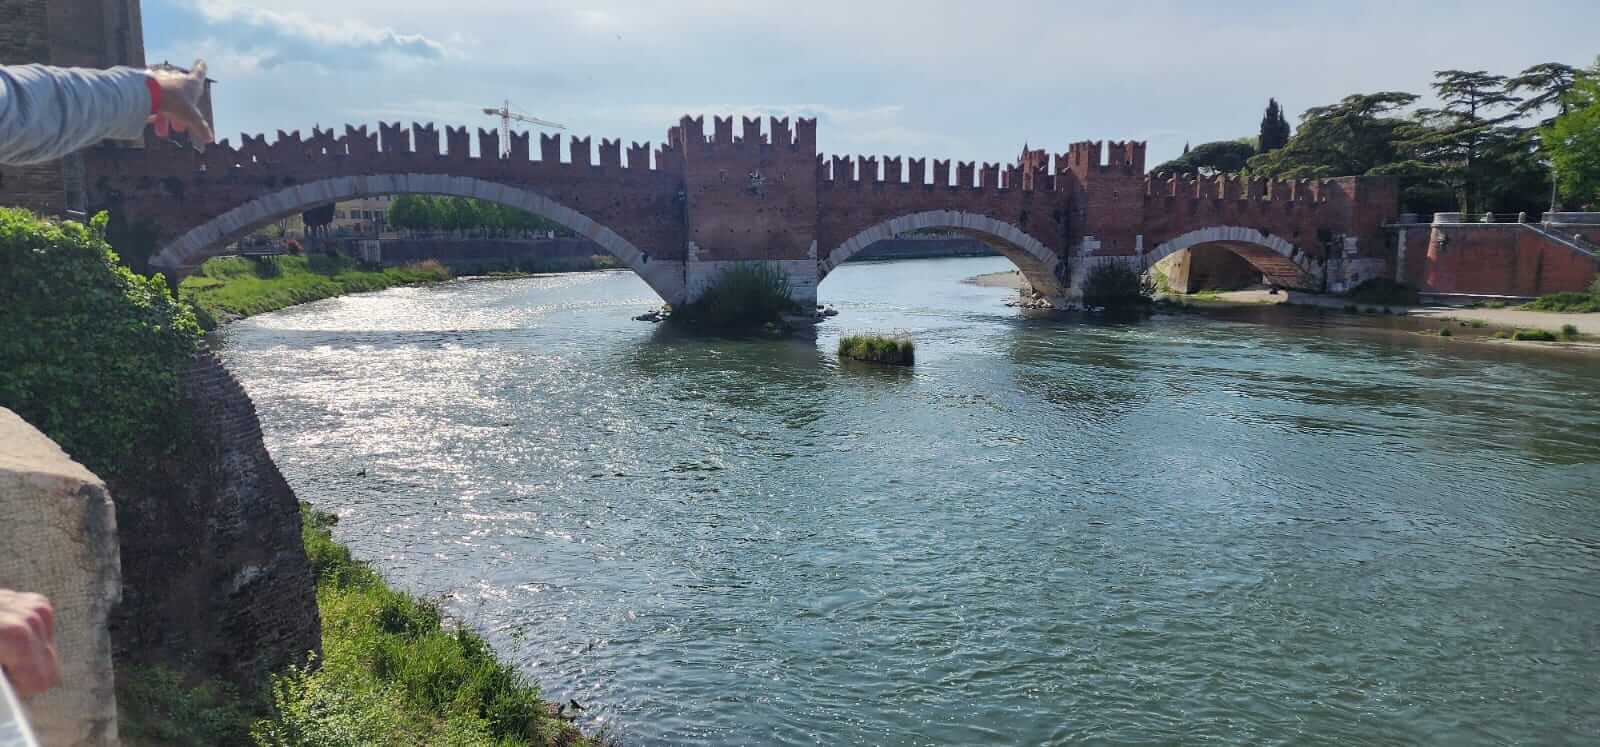 צפון איטליה באפריל - החומות בורונה, גשר שניתן לעבור בו מצד לצד. חינם